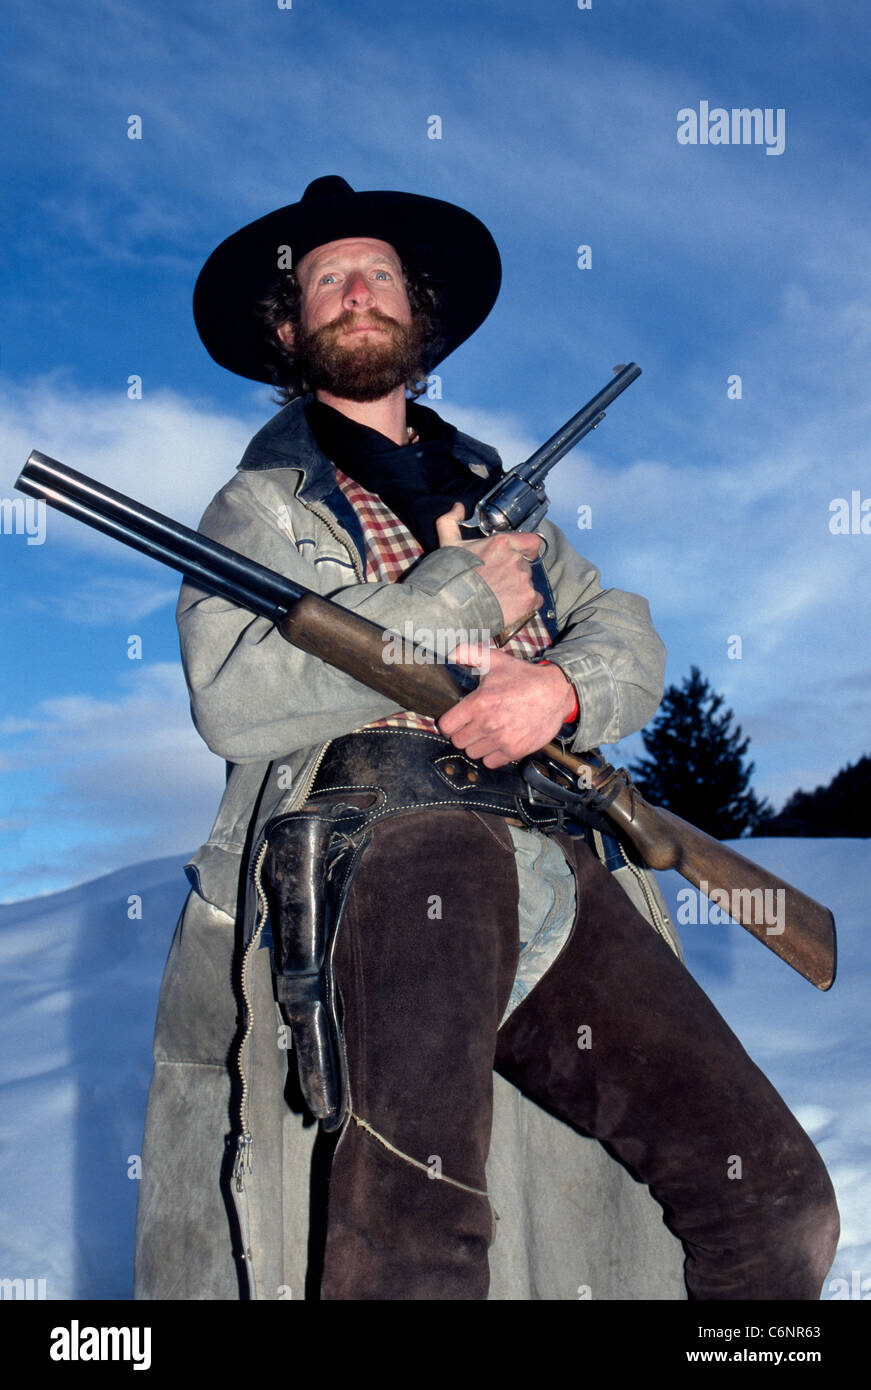 Un cowboy gunslinging nella sparatoria pista porta il vecchio West alla vita con gunfight spettacoli per turisti in Jackson Hole, Wyoming negli Stati Uniti. Foto Stock